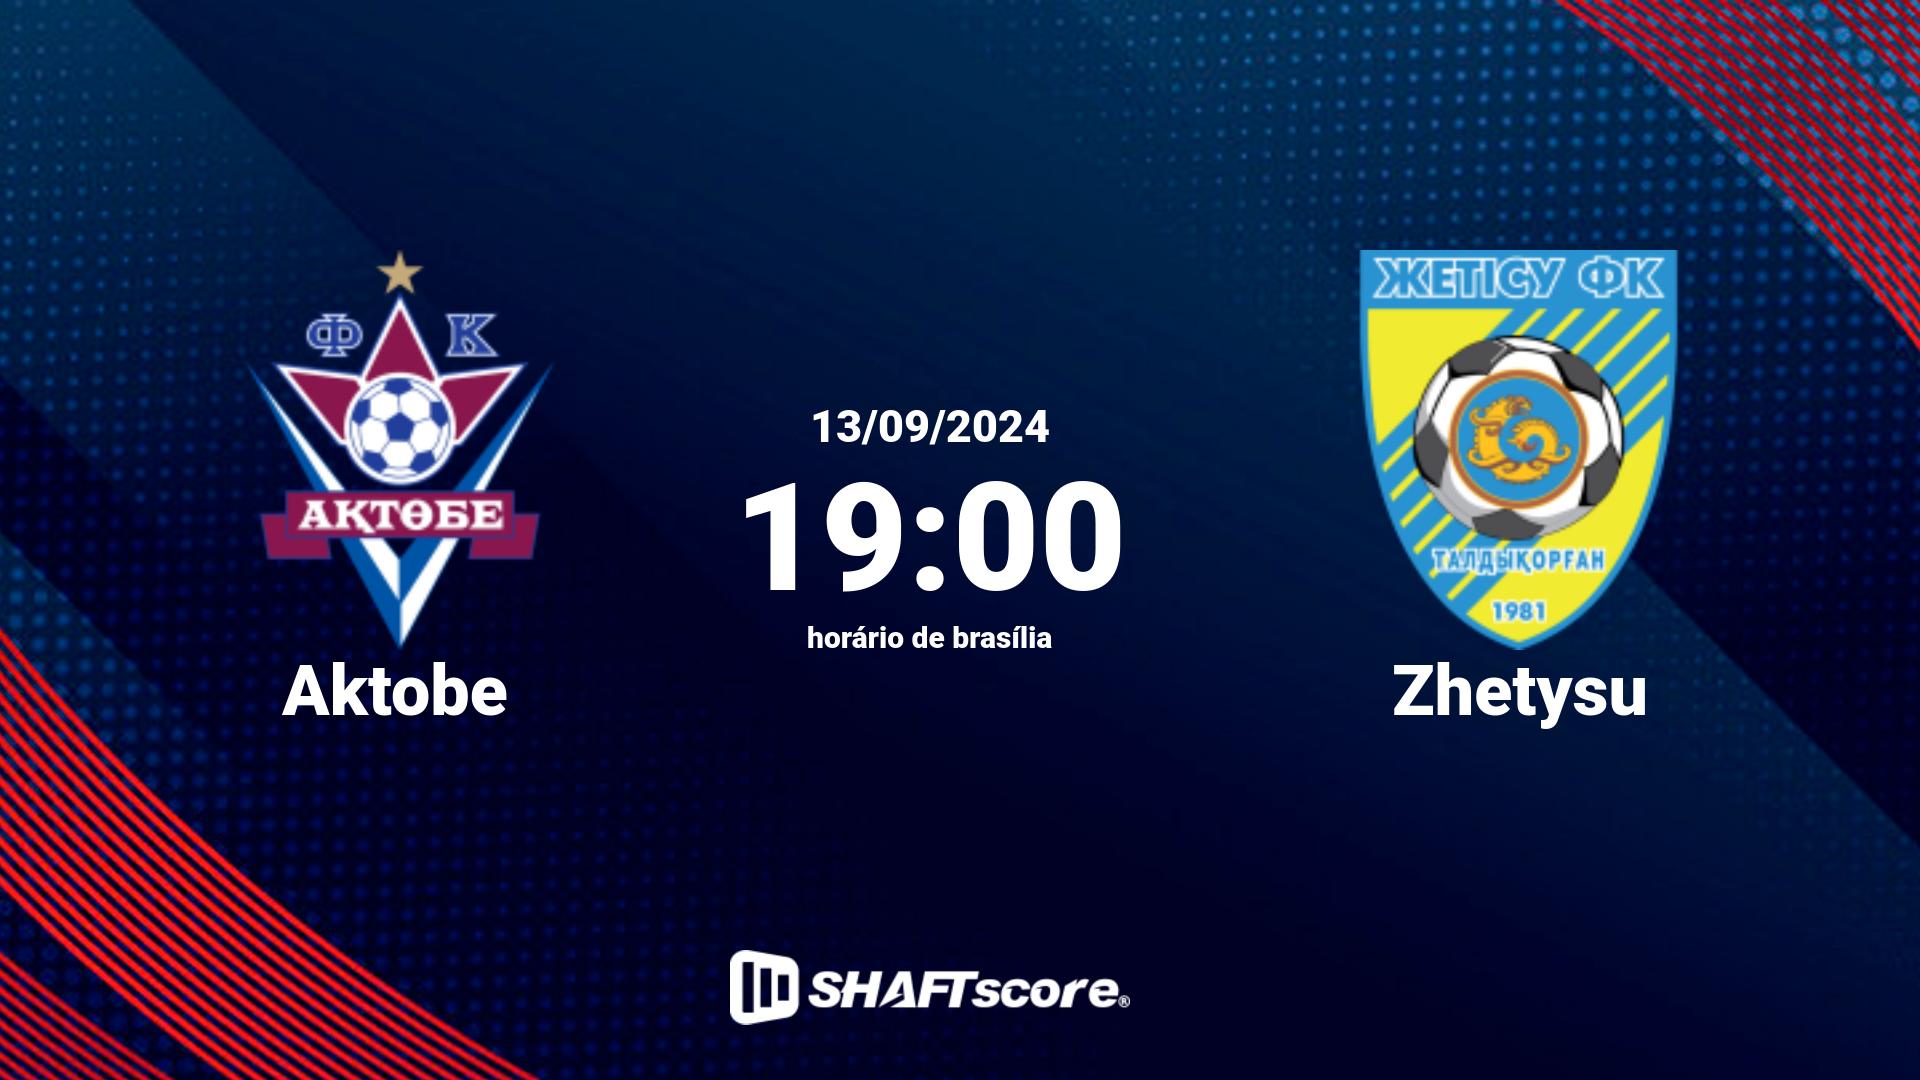 Estatísticas do jogo Aktobe vs Zhetysu 13.09 19:00